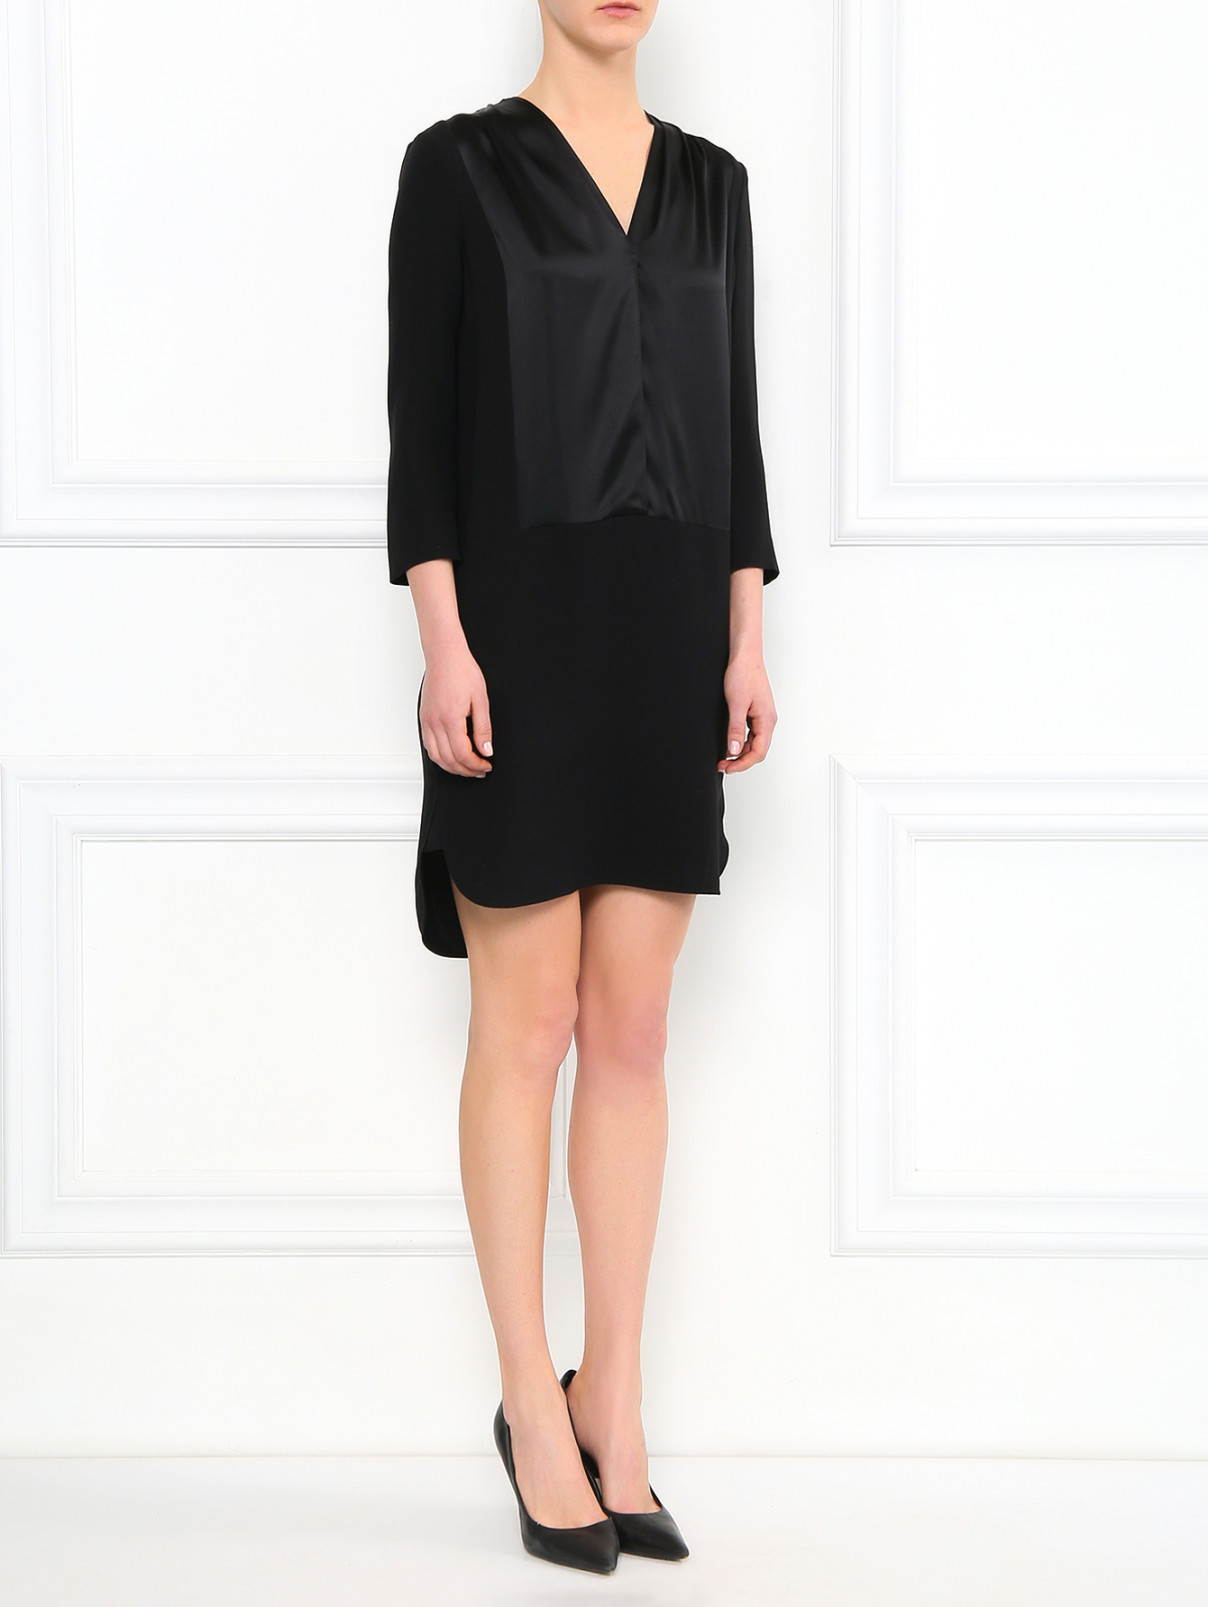 Платье из шелка Burberry  –  Модель Общий вид  – Цвет:  Черный